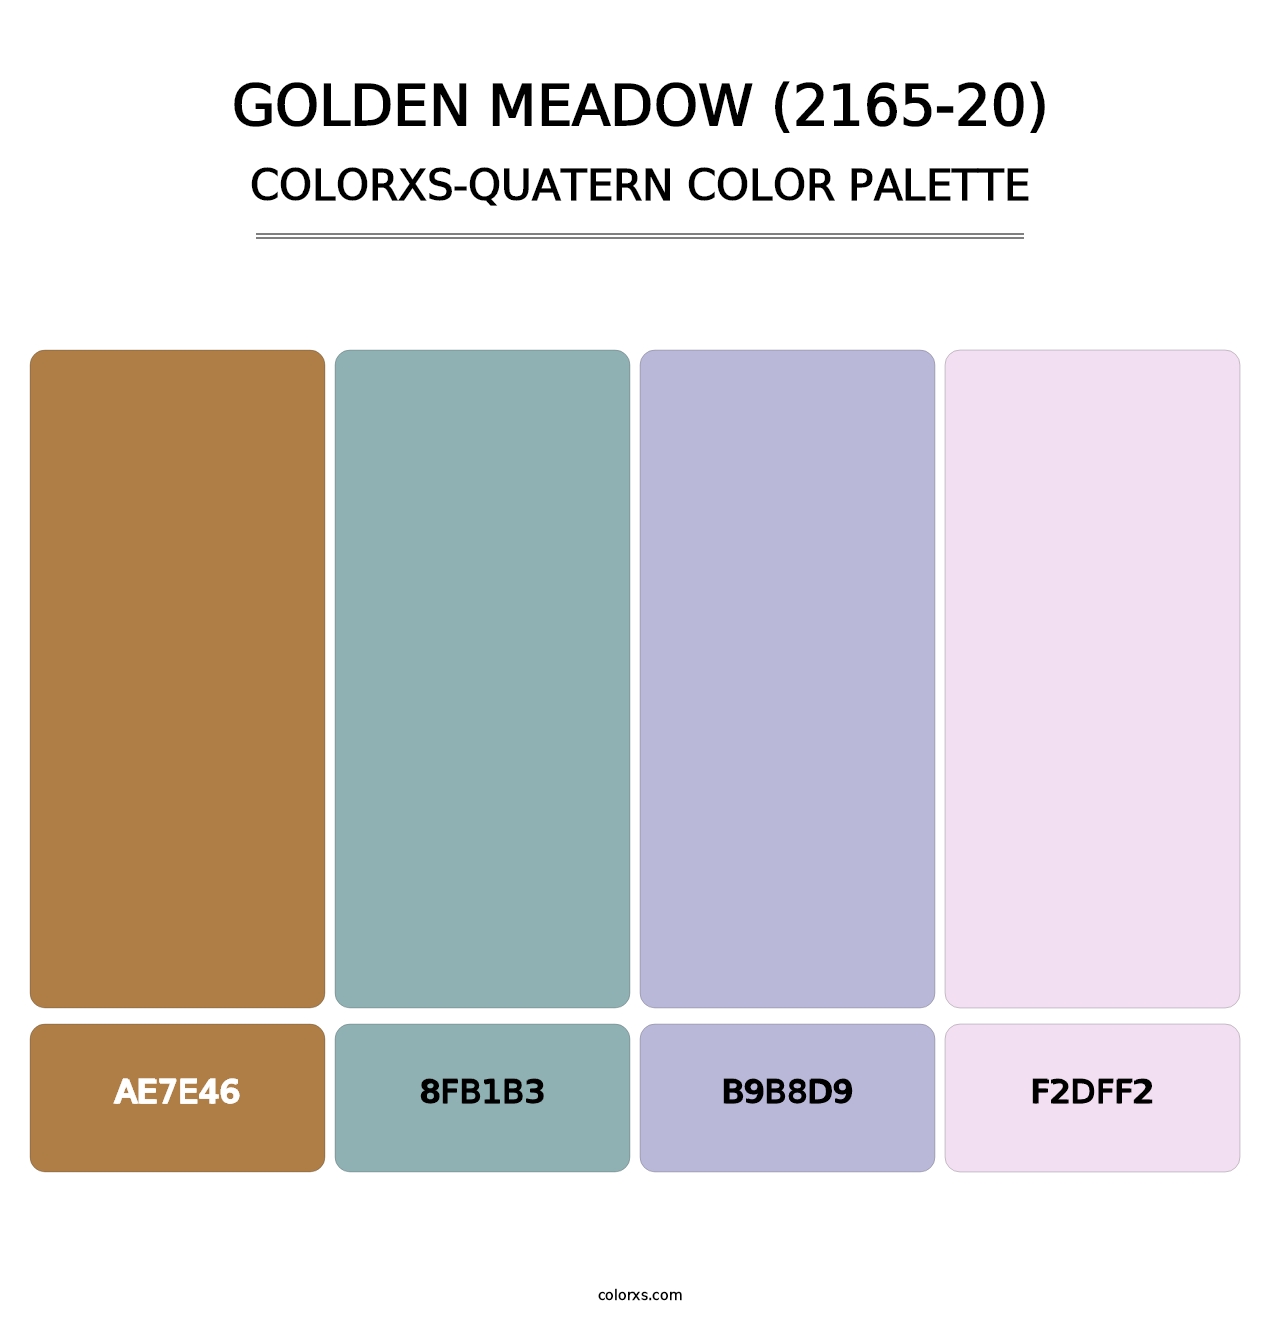 Golden Meadow (2165-20) - Colorxs Quatern Palette